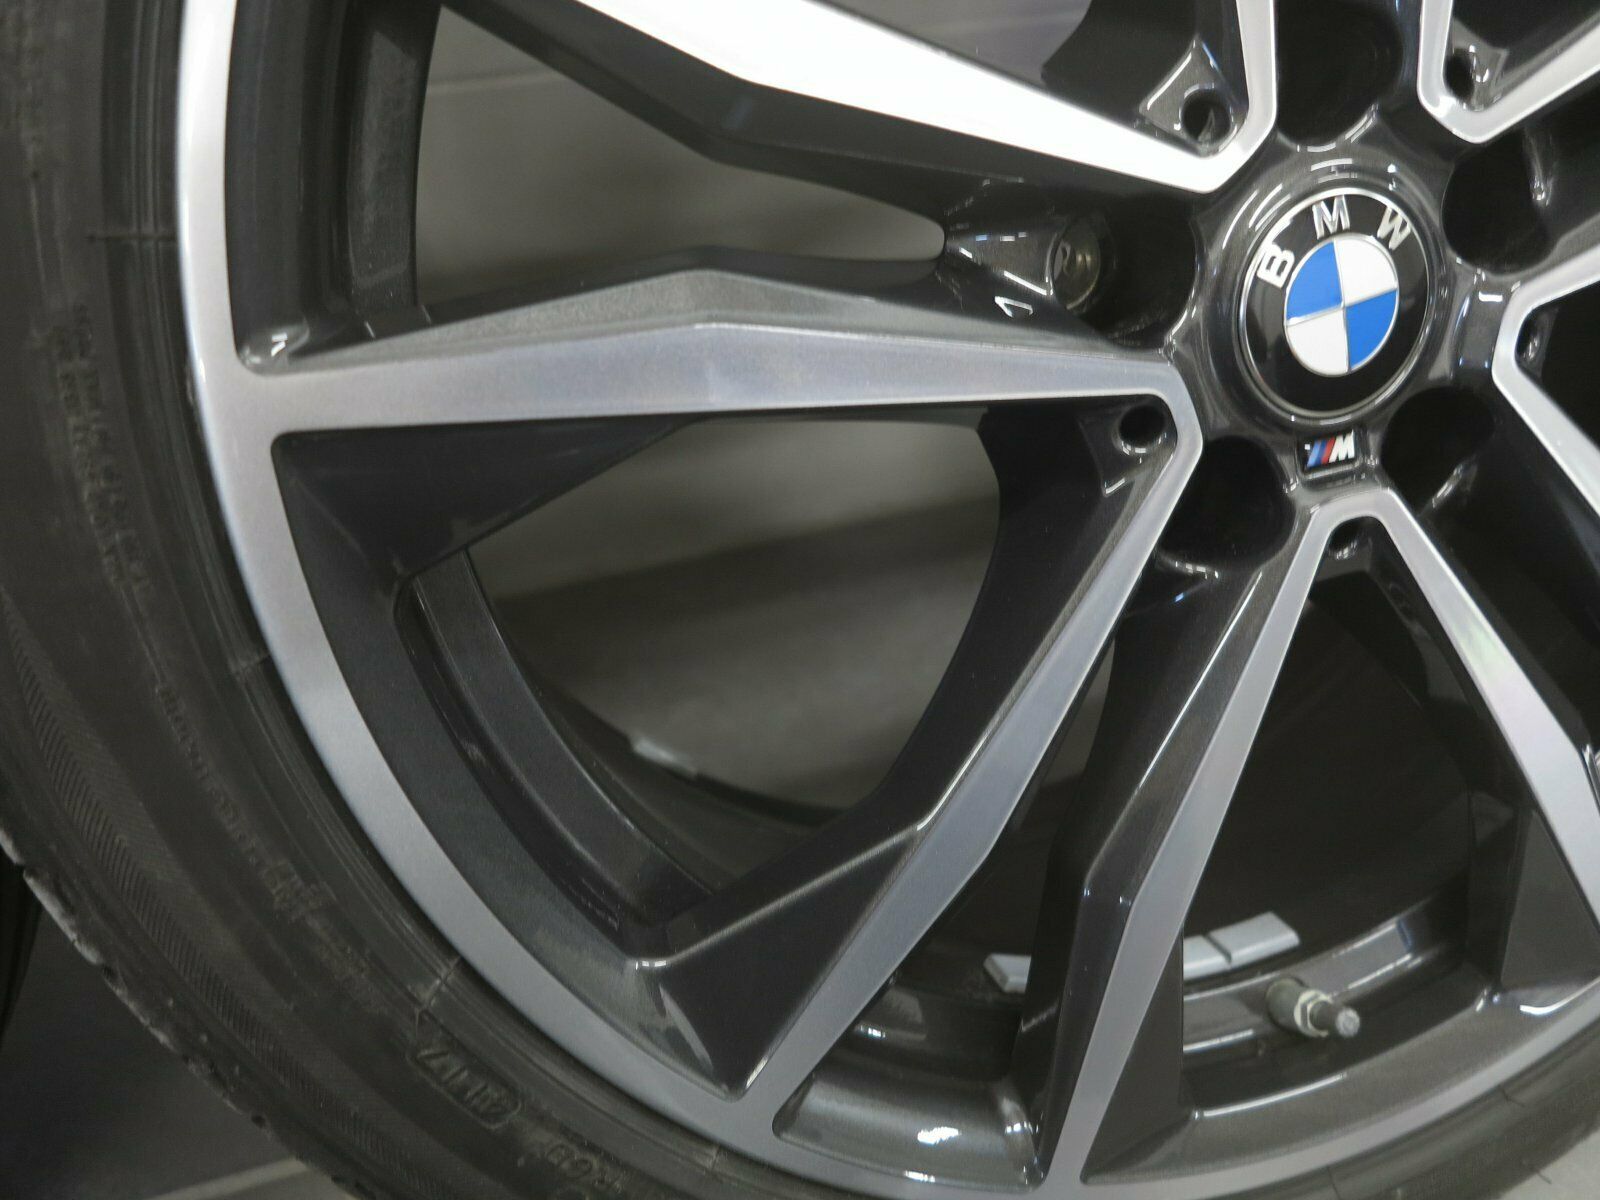 19 pouces roues d'été d'origine BMW X1 F48 X2 F39 M715 8008616 pneus d'été (B98)